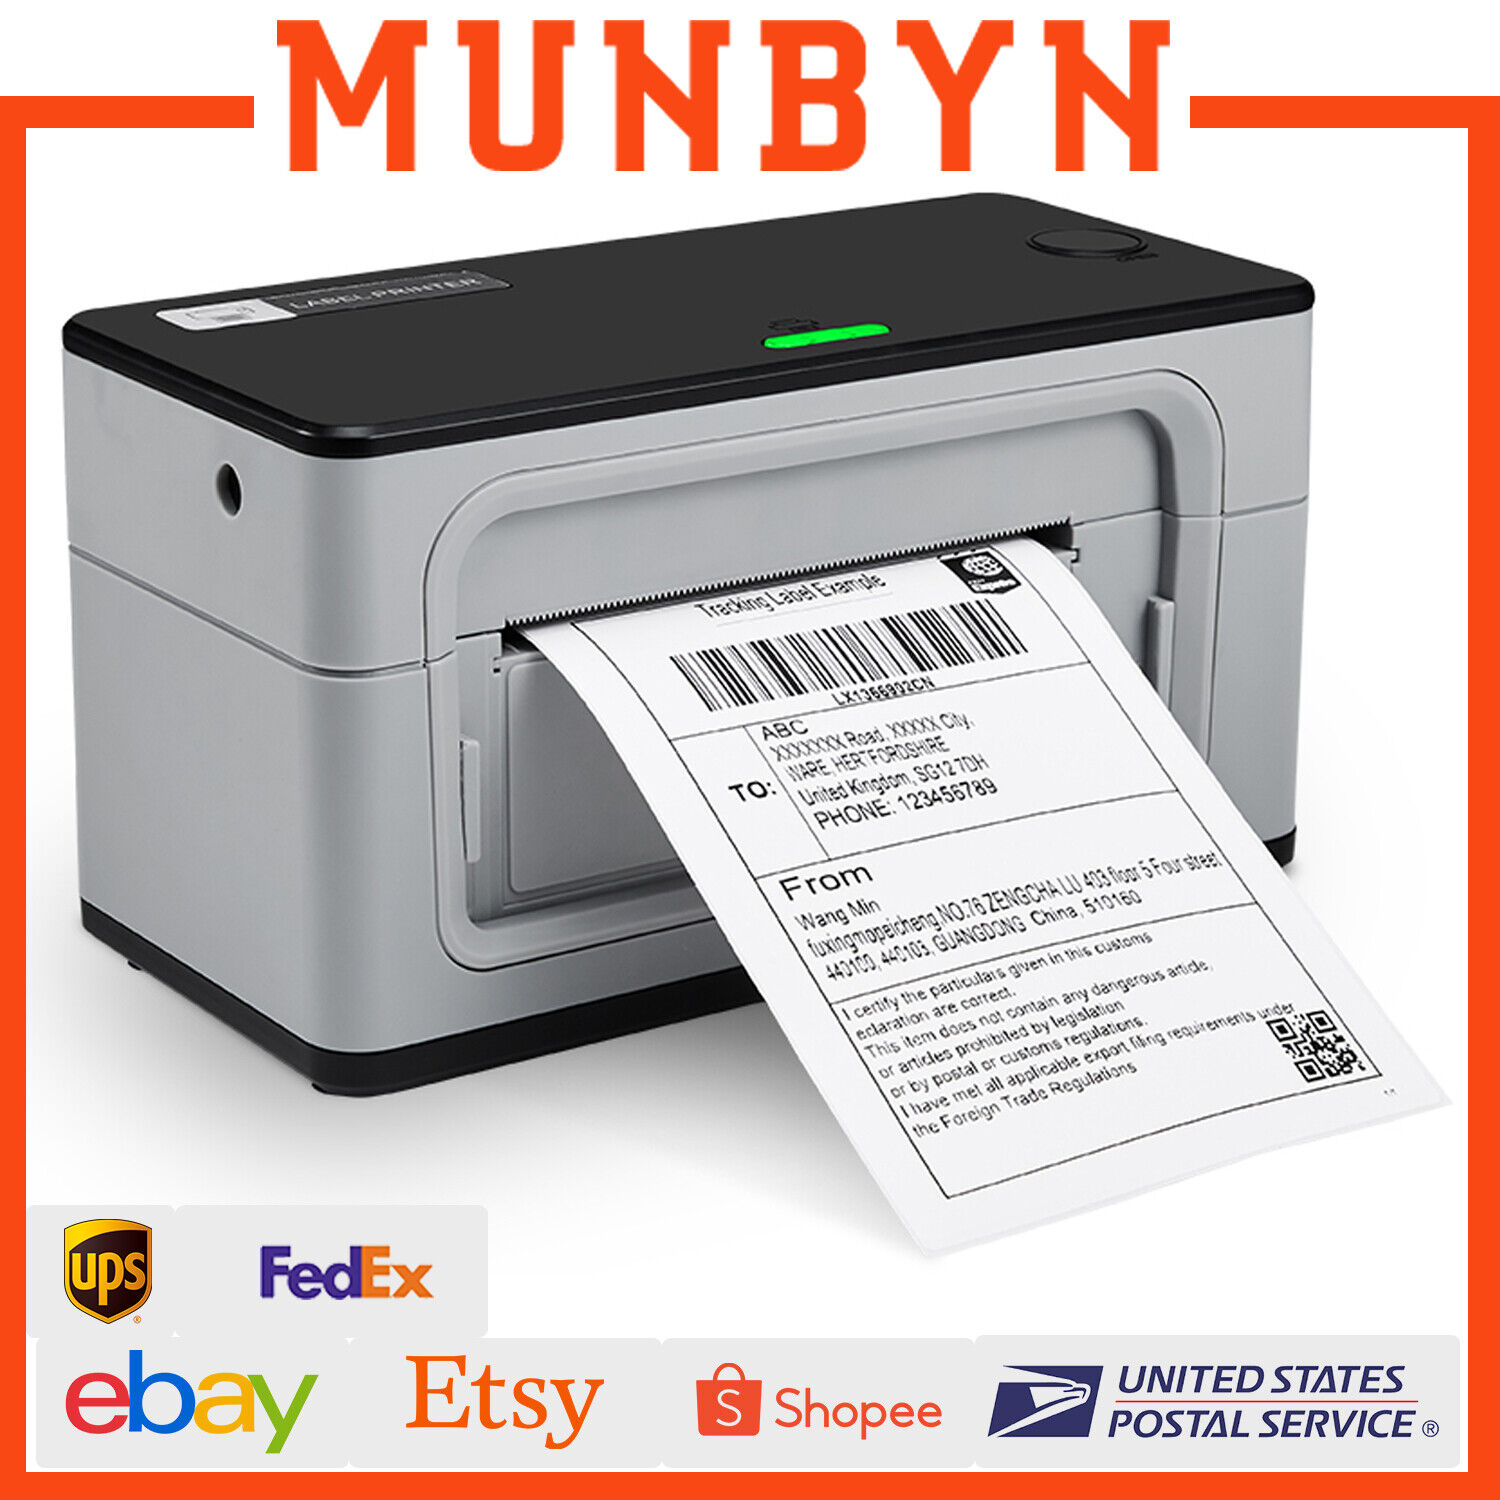 MUNBYN Bluetooth USB 4x6 Thermal Shipping Label Printer for UPS USPS FedEx eBay